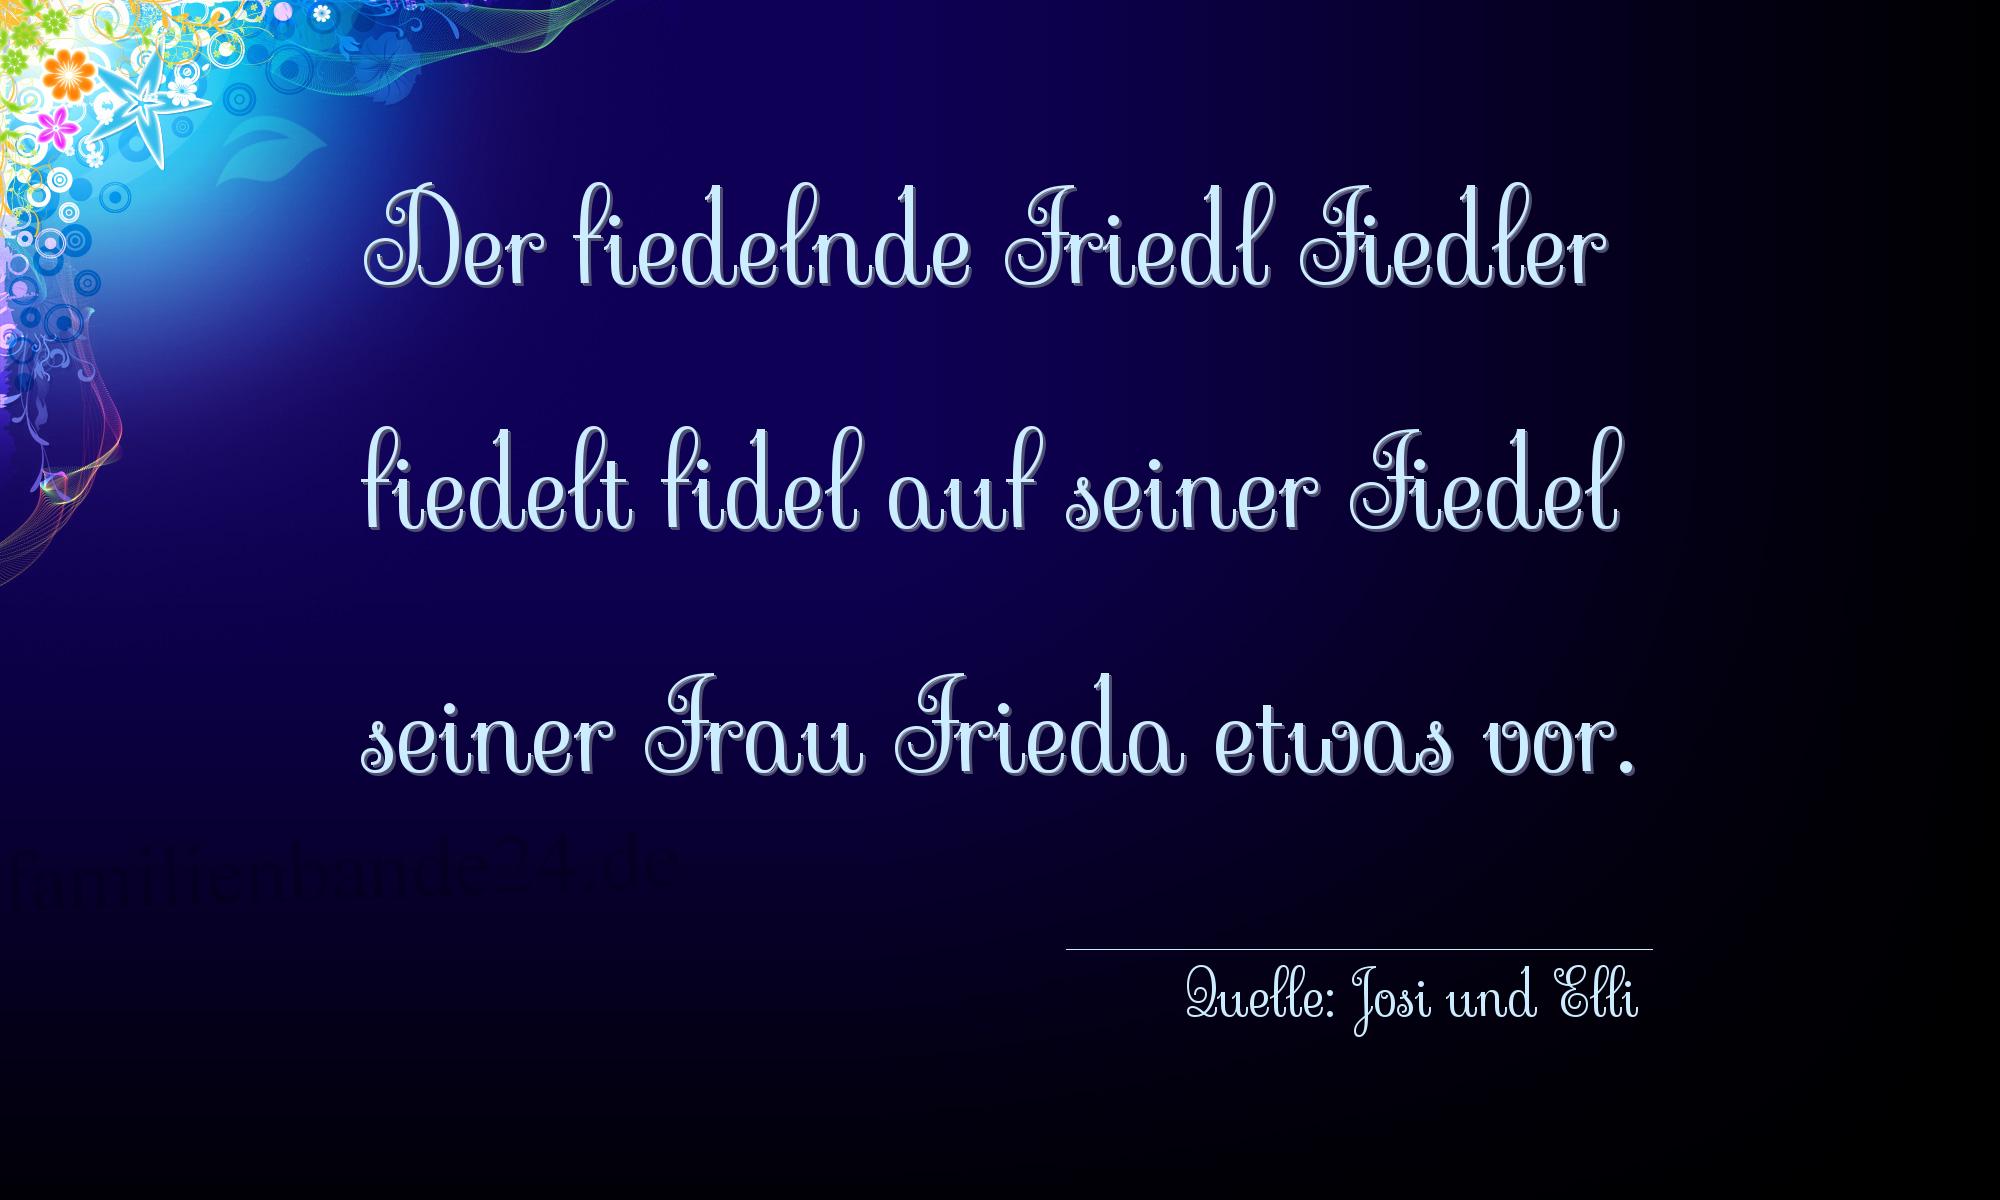 Zungenbrecher Nummer 2003 (von Josi und Elli): Der fiedelnde Friedl Fiedler fiedelt fidel auf seiner Fied [...]